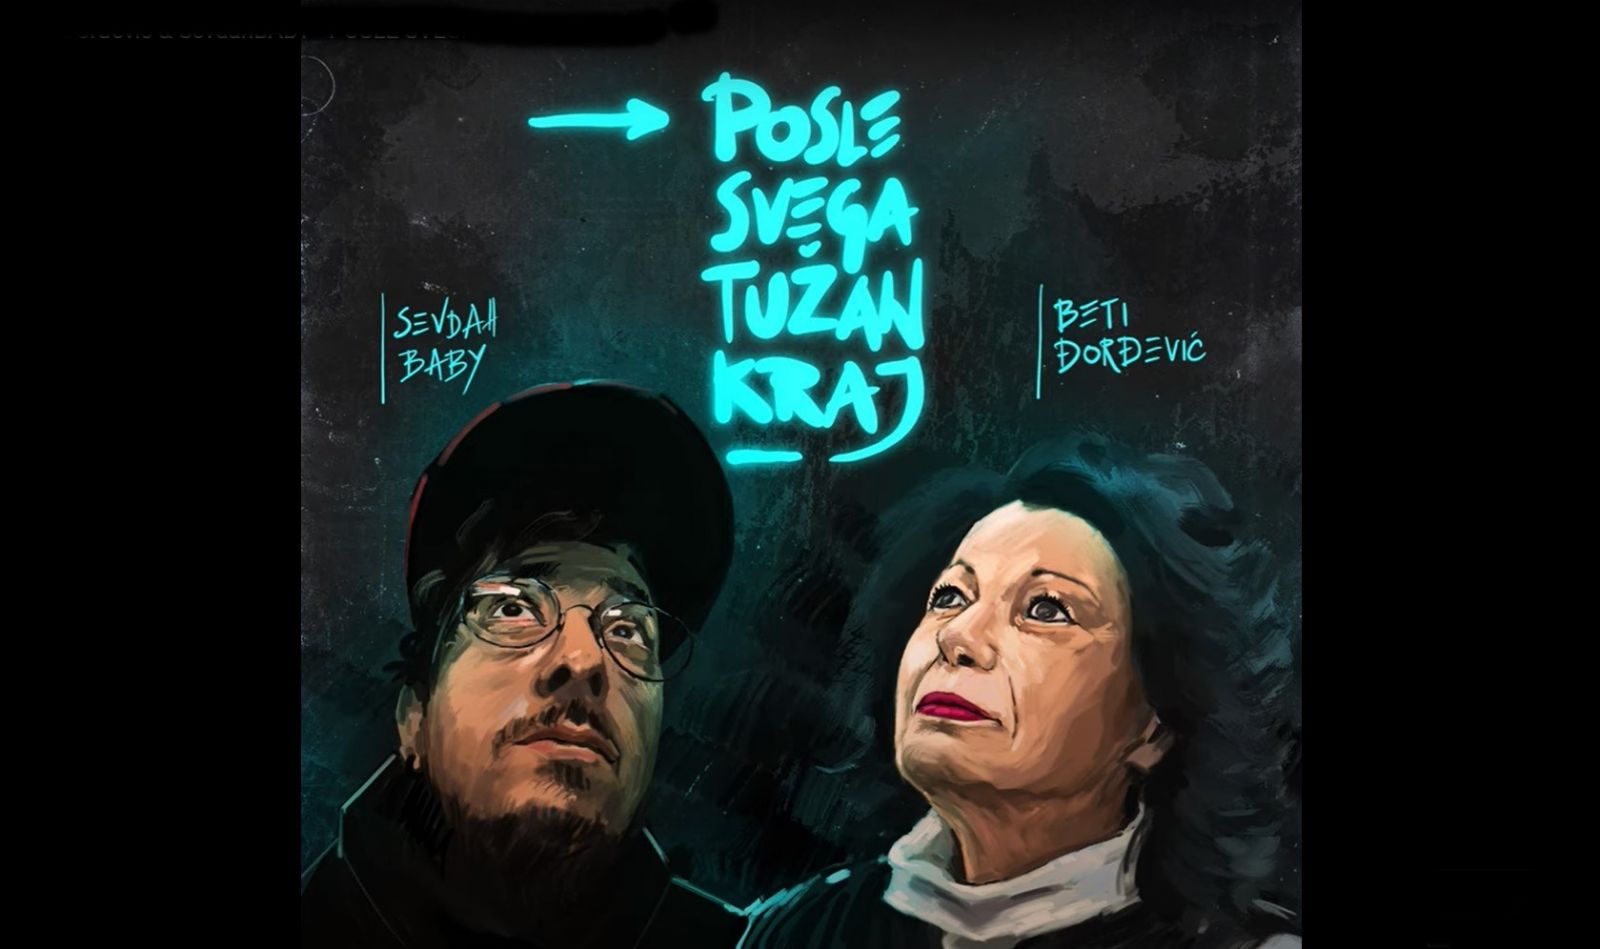 Beti Đorđević & SevdahBABY - POSLE SVEGA TUŽAN KRAJ